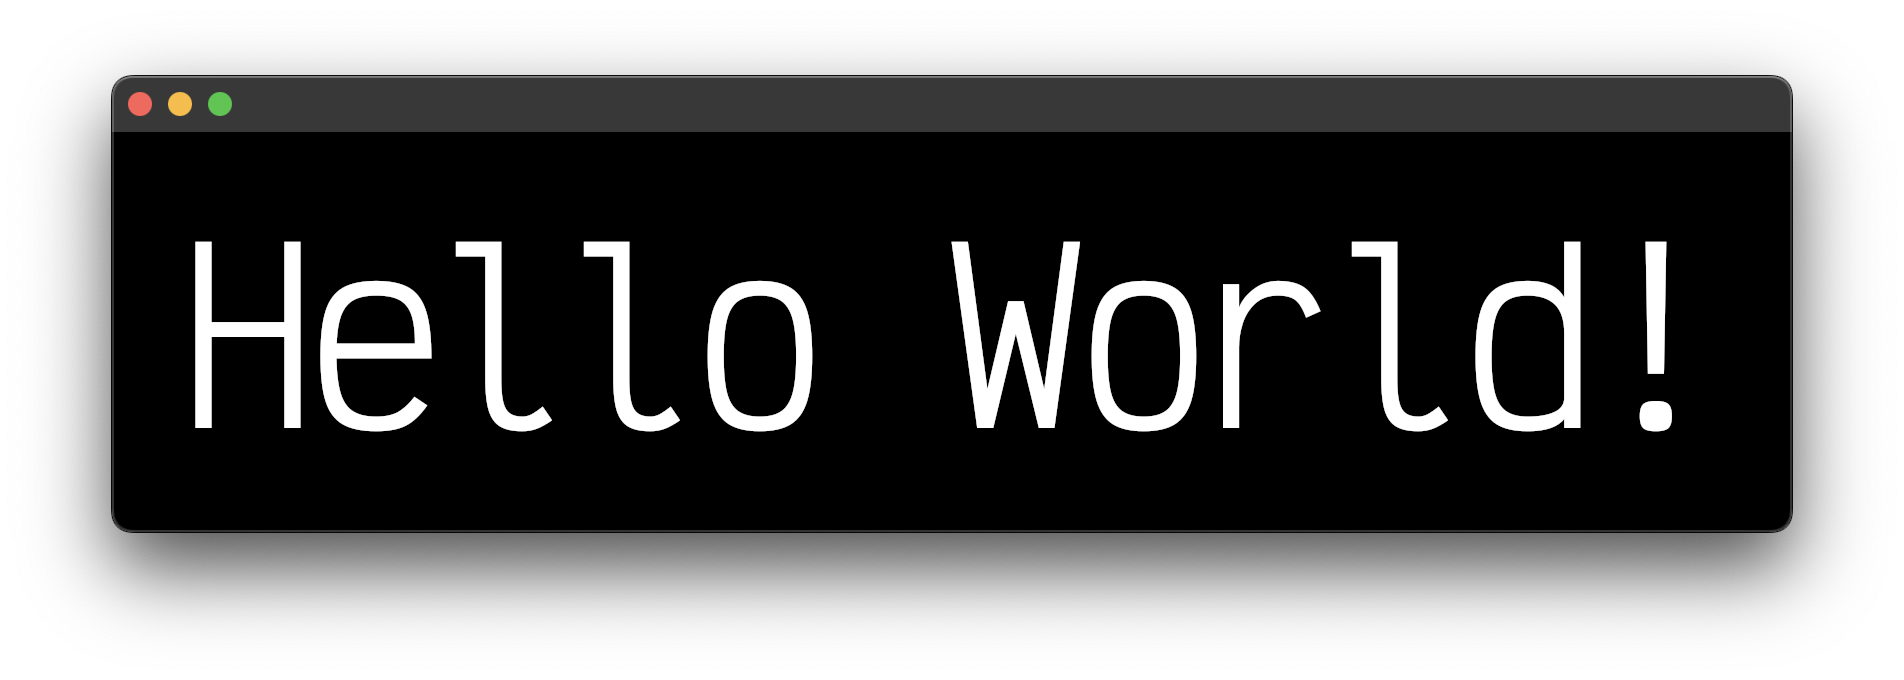 A window screenshot of hello world text